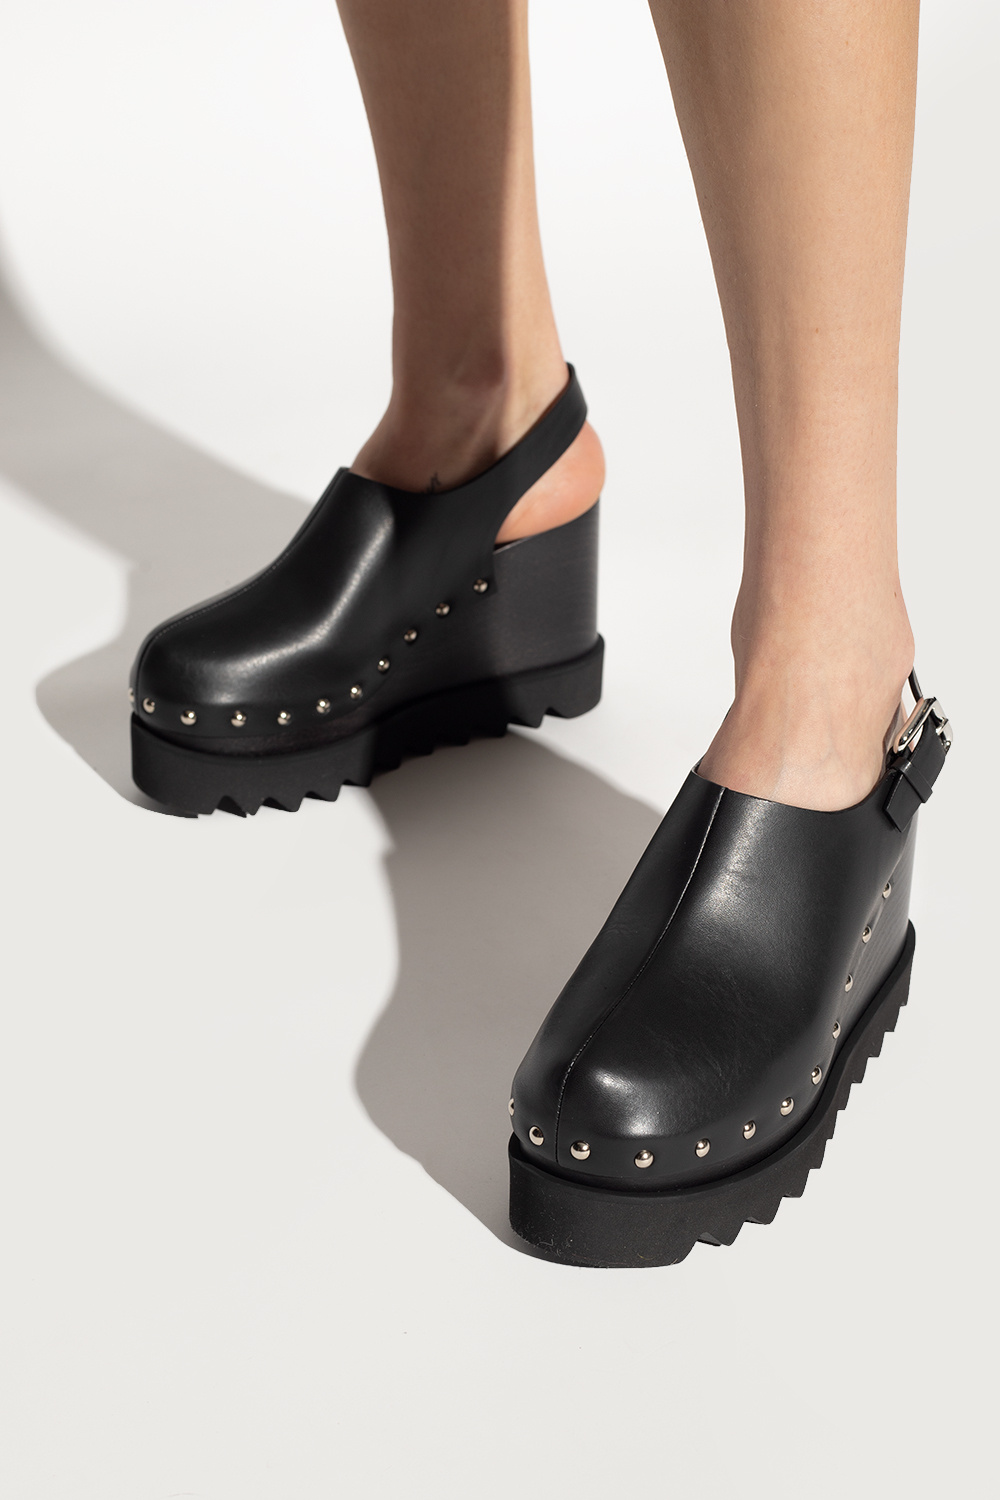 Black 'Elyse' platform shoes Stella McCartney - Vitkac Australia